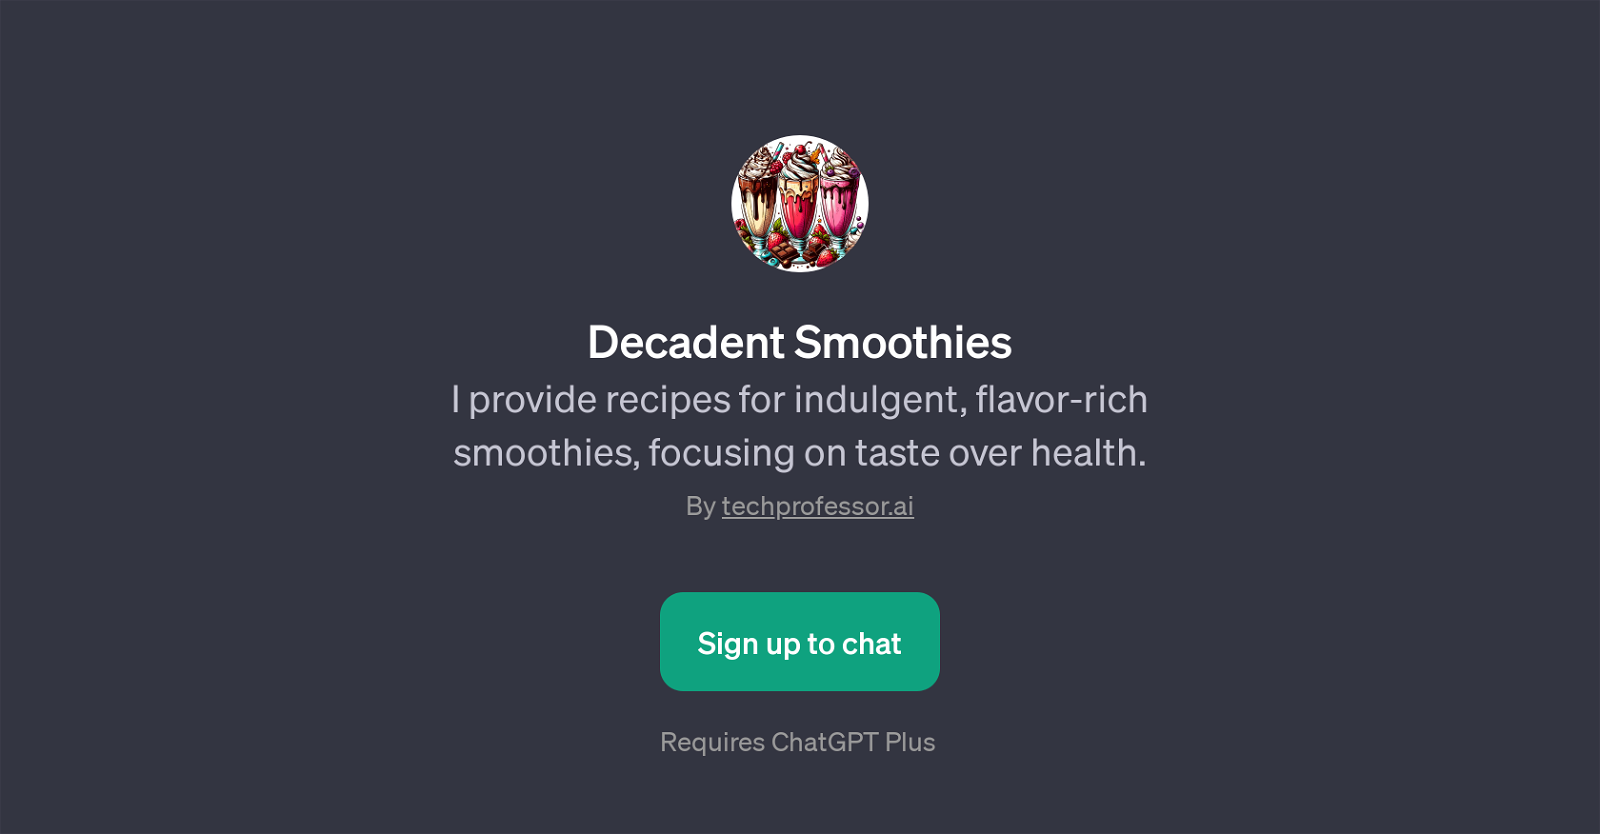 Decadent Smoothies website